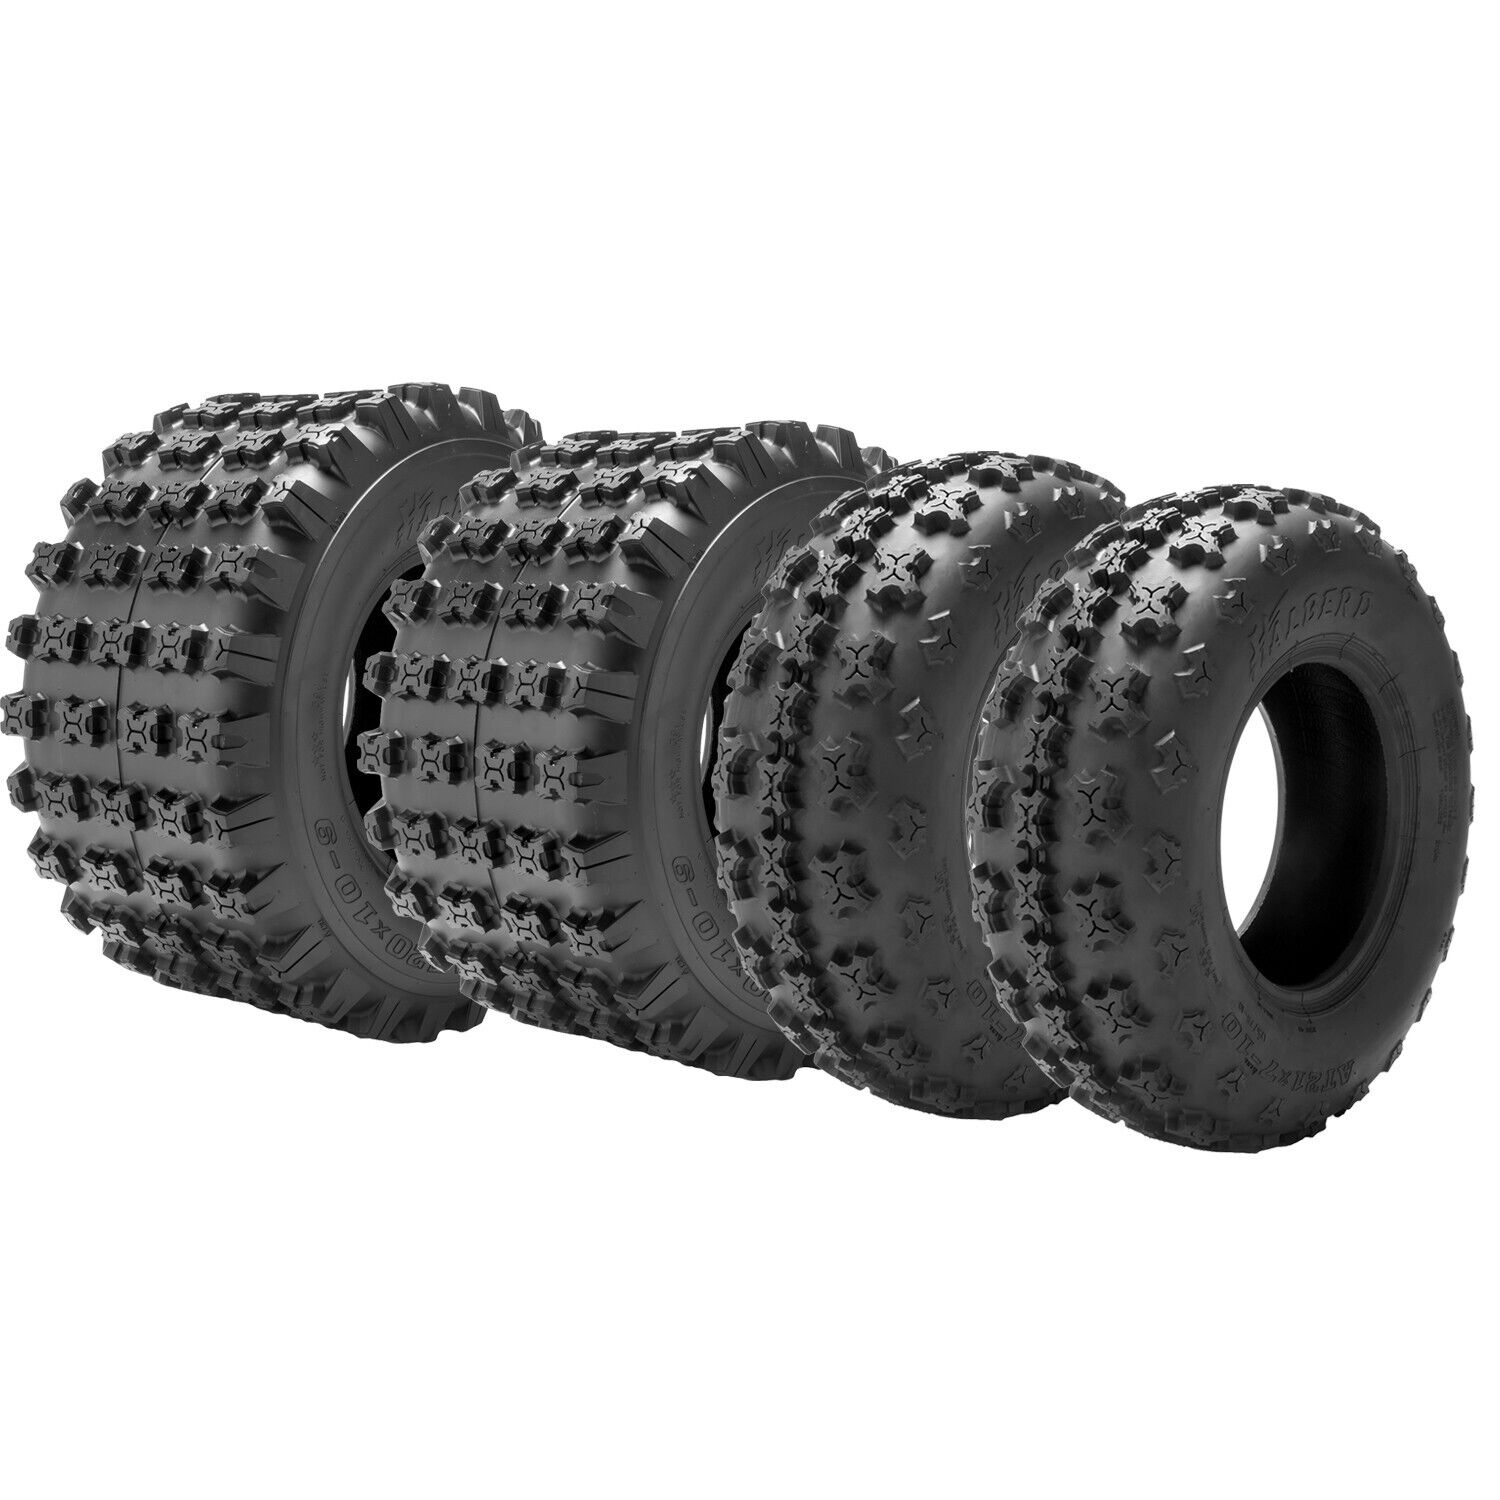 Full Set 4 22x7-10 20x11-10 ATV Tires Sport Quad Heavy Duty 22x7x10&20x11x10